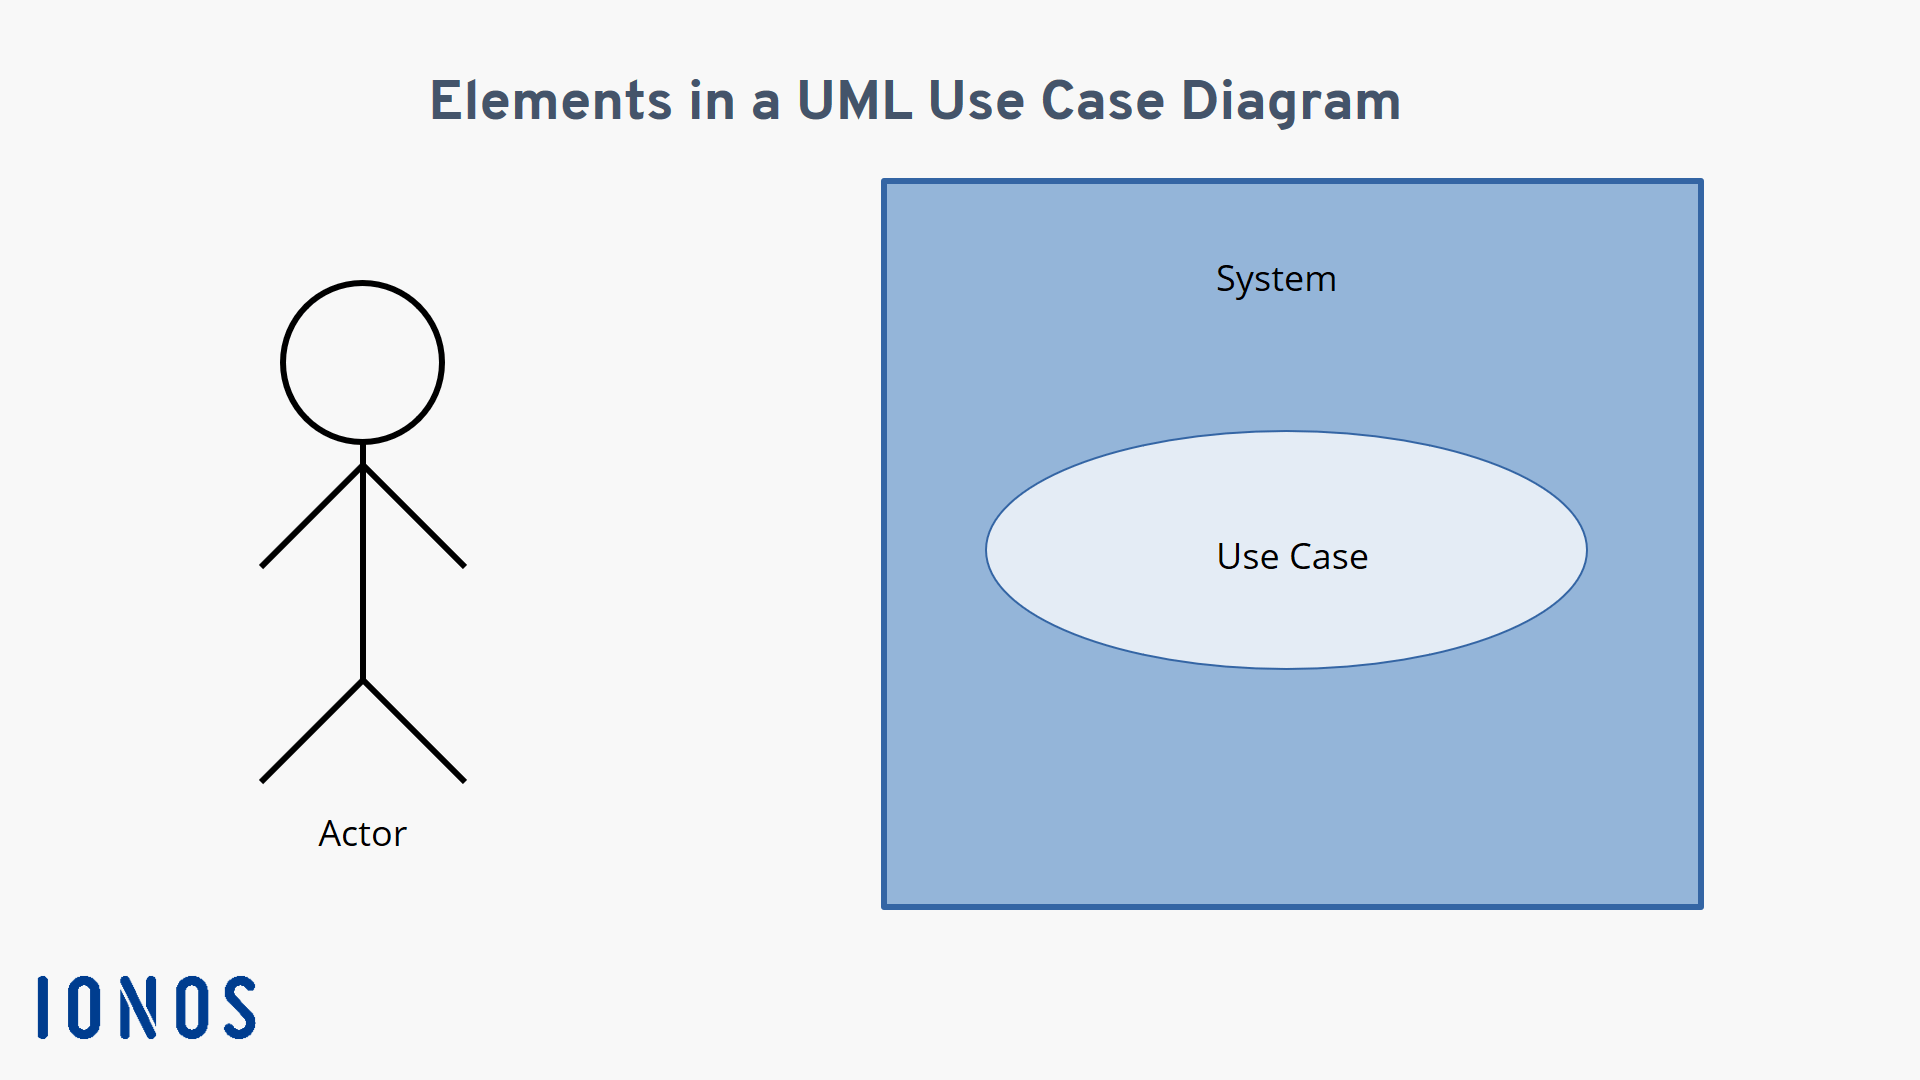 Diagrama de casos de uso do sistema O ambiente possui